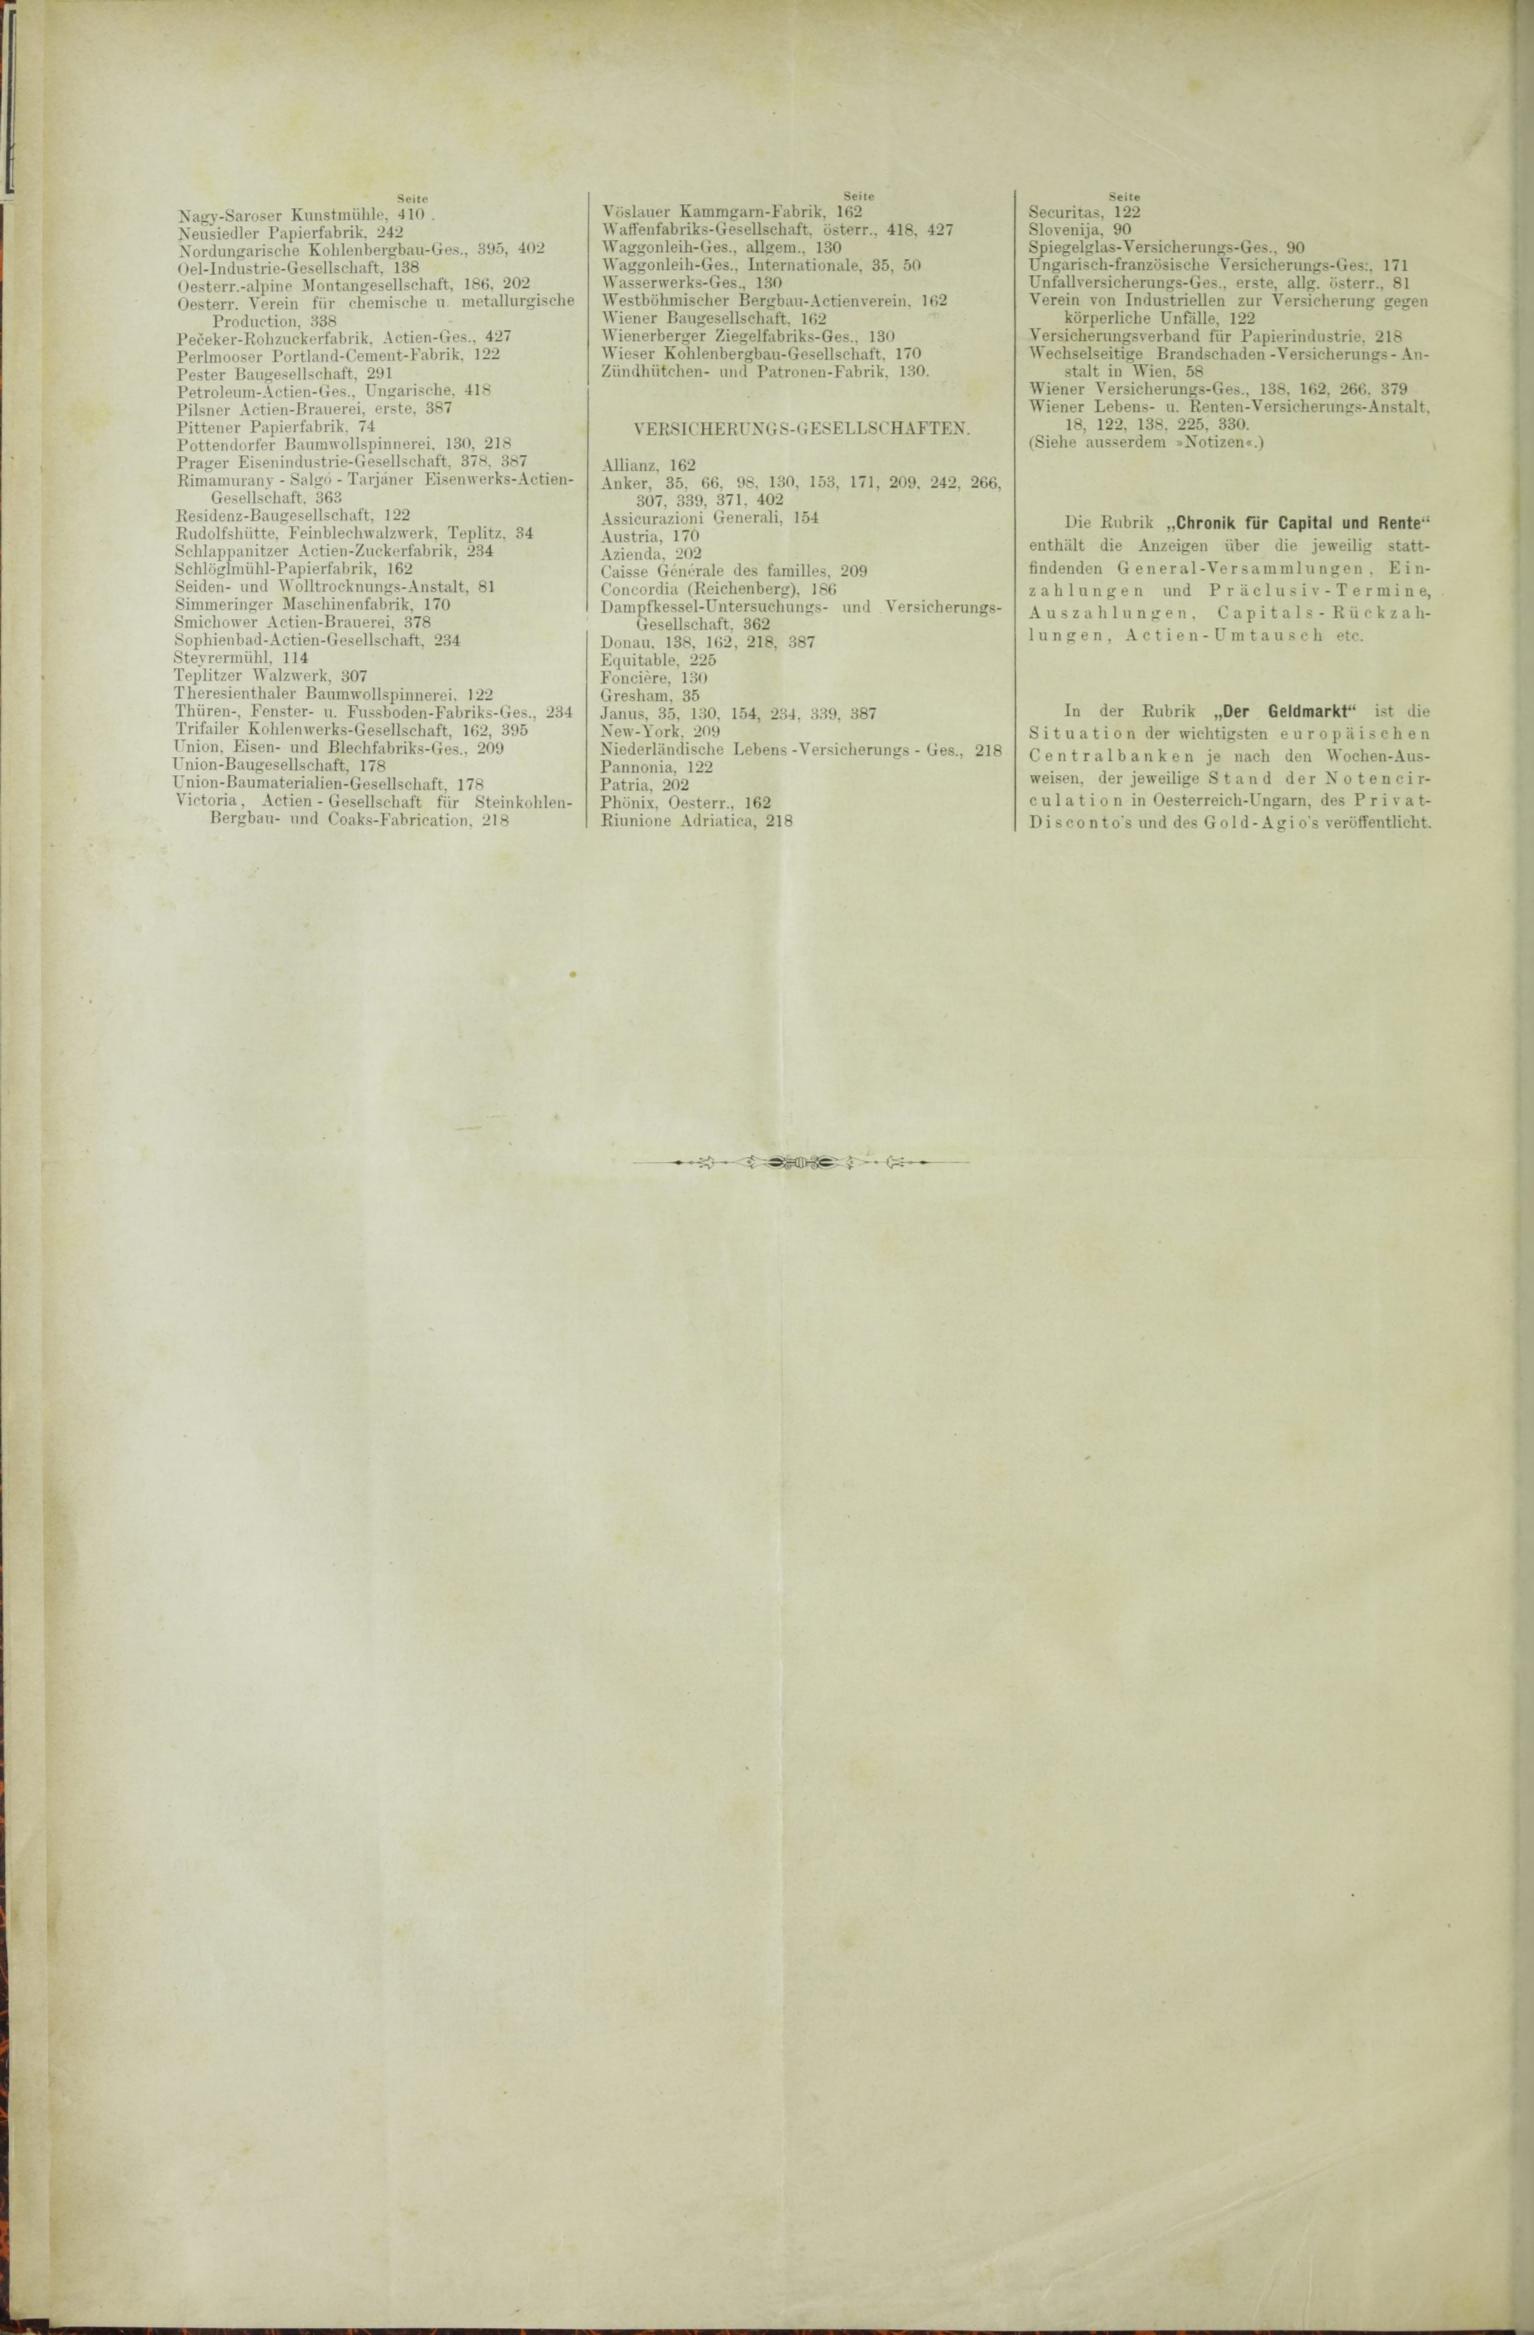 Der Tresor 20.08.1885 - Seite 12